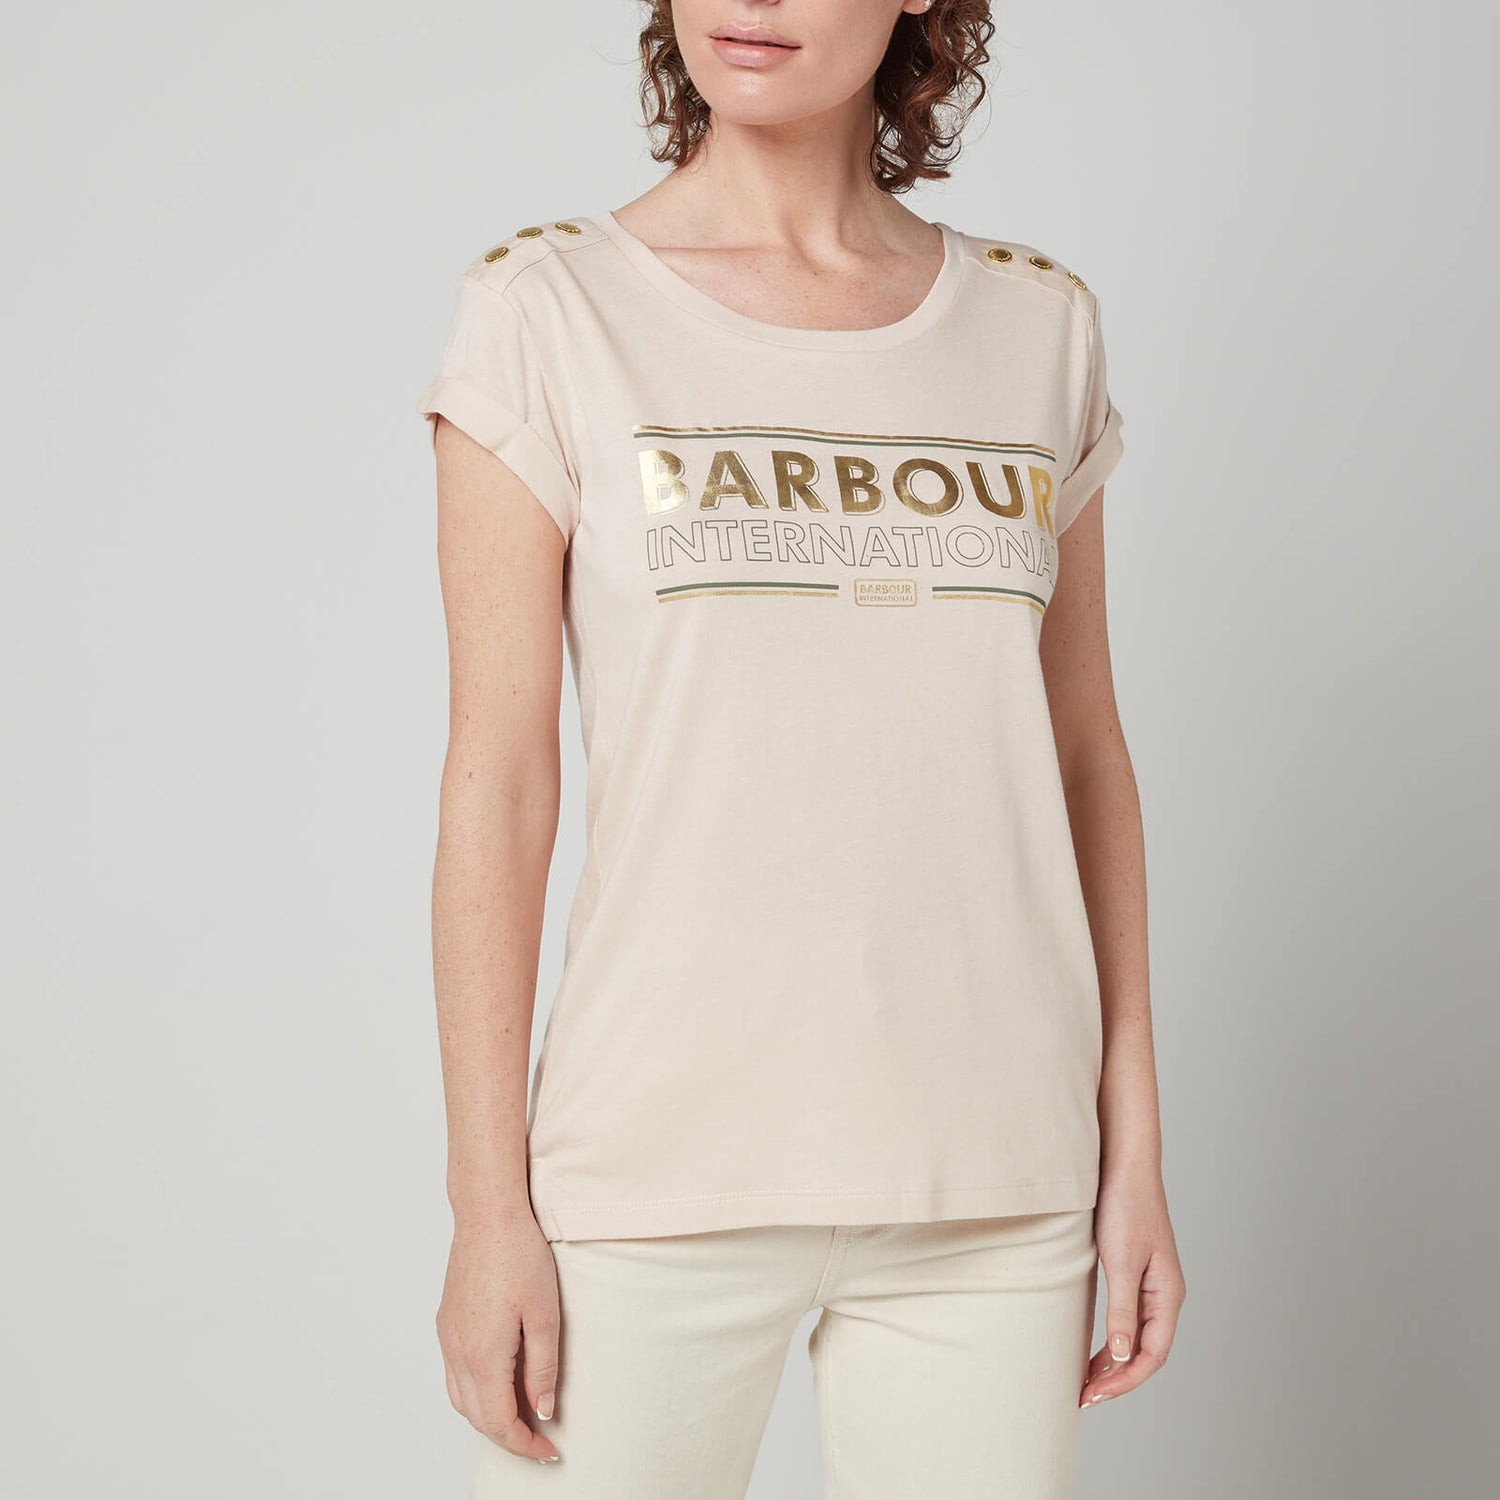 Barbour International Women's Montegi T-Shirt - Champagne